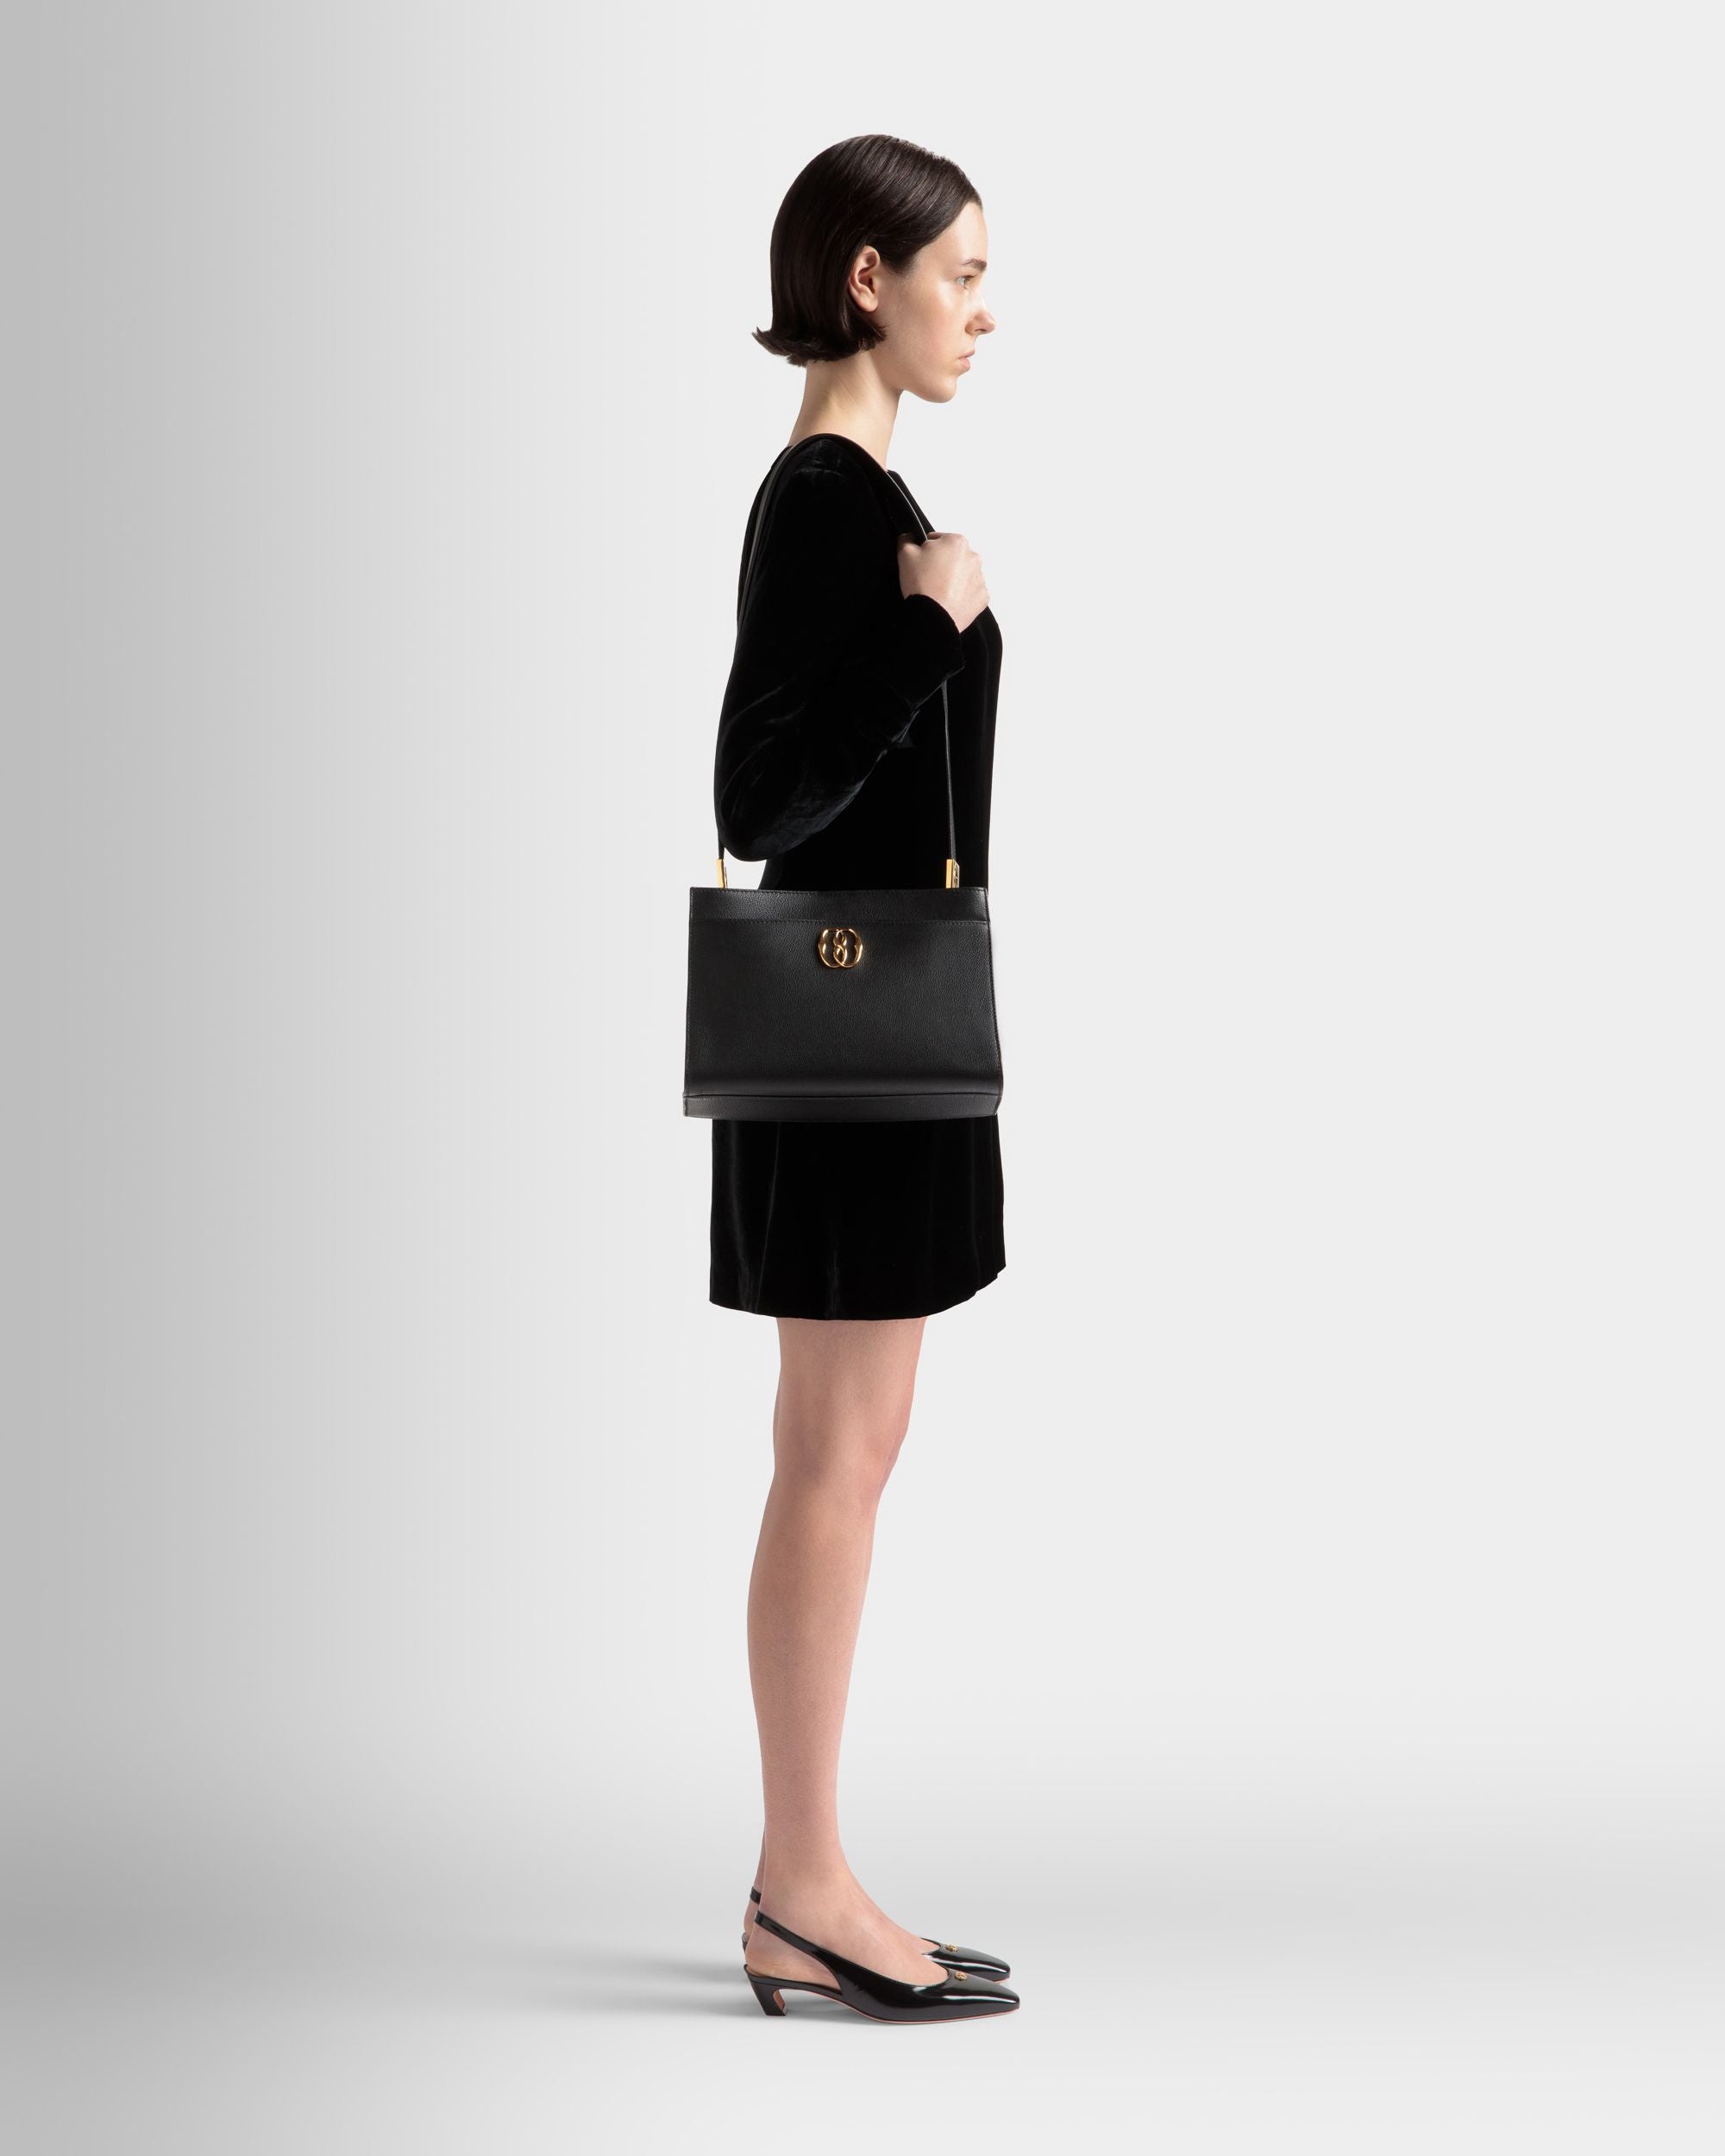 Emblem |  Schultertasche für Damen aus genarbtem Leder in Schwarz | Bally | Model getragen Vorderseite